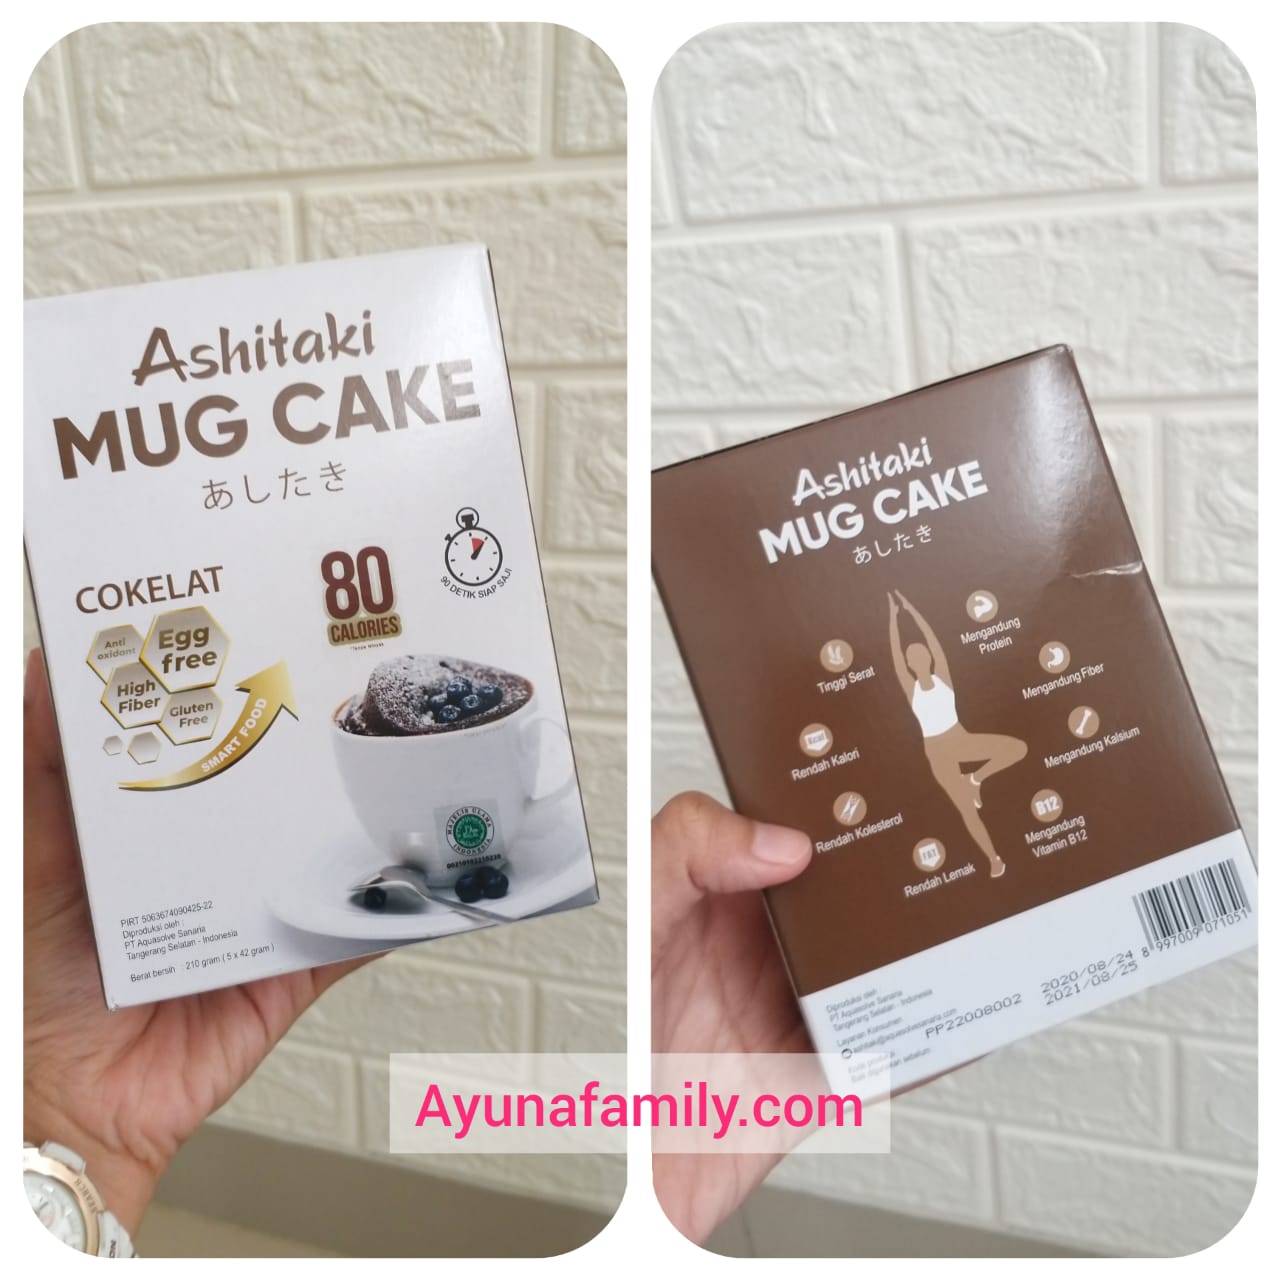 Ashitaki Mug Cake Rasa Cokelat.